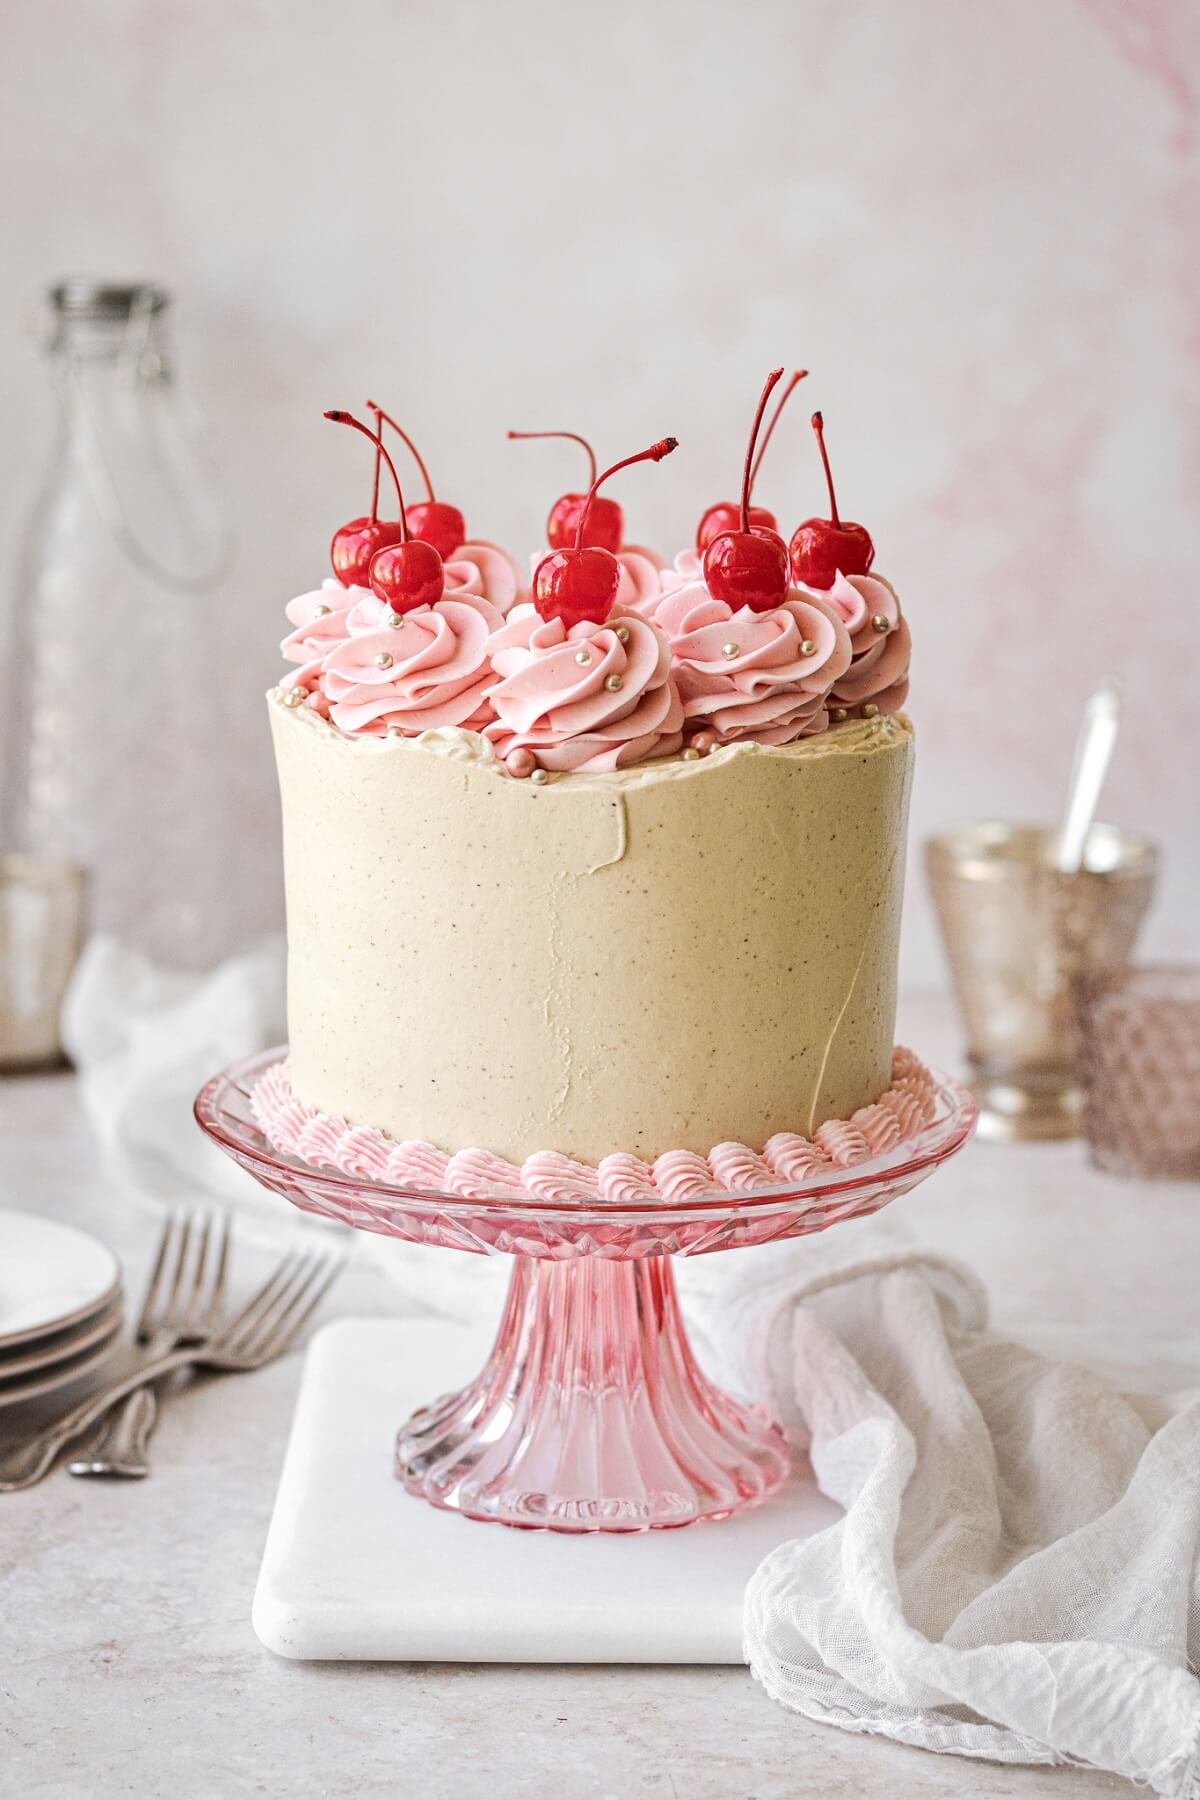 Cherry pistachio layer cake topped with swirls of pink buttercream and maraschino cherries.